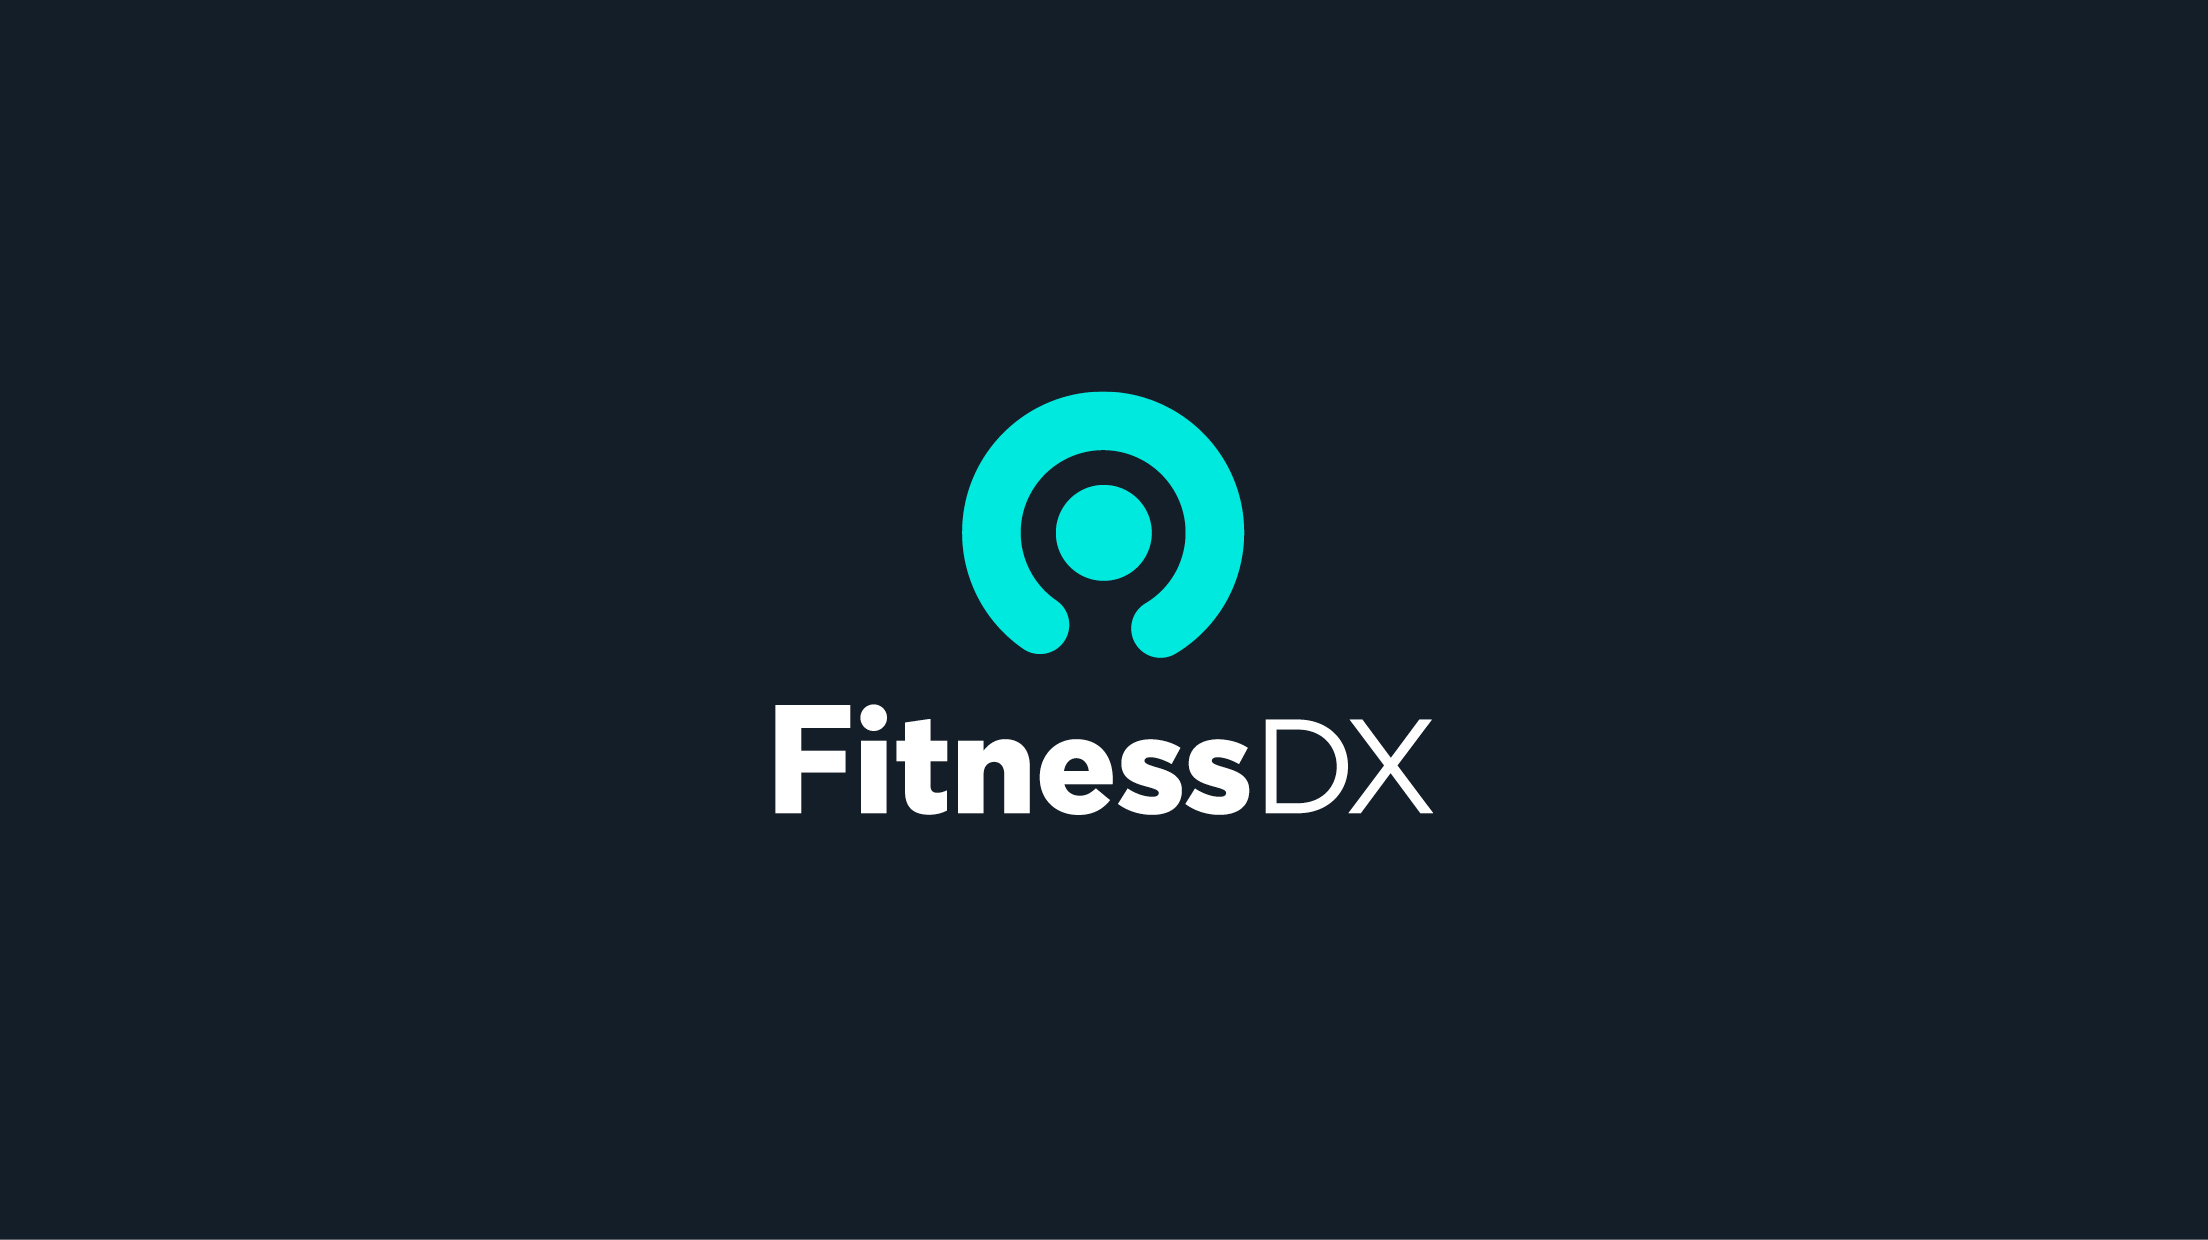 FitnessDX